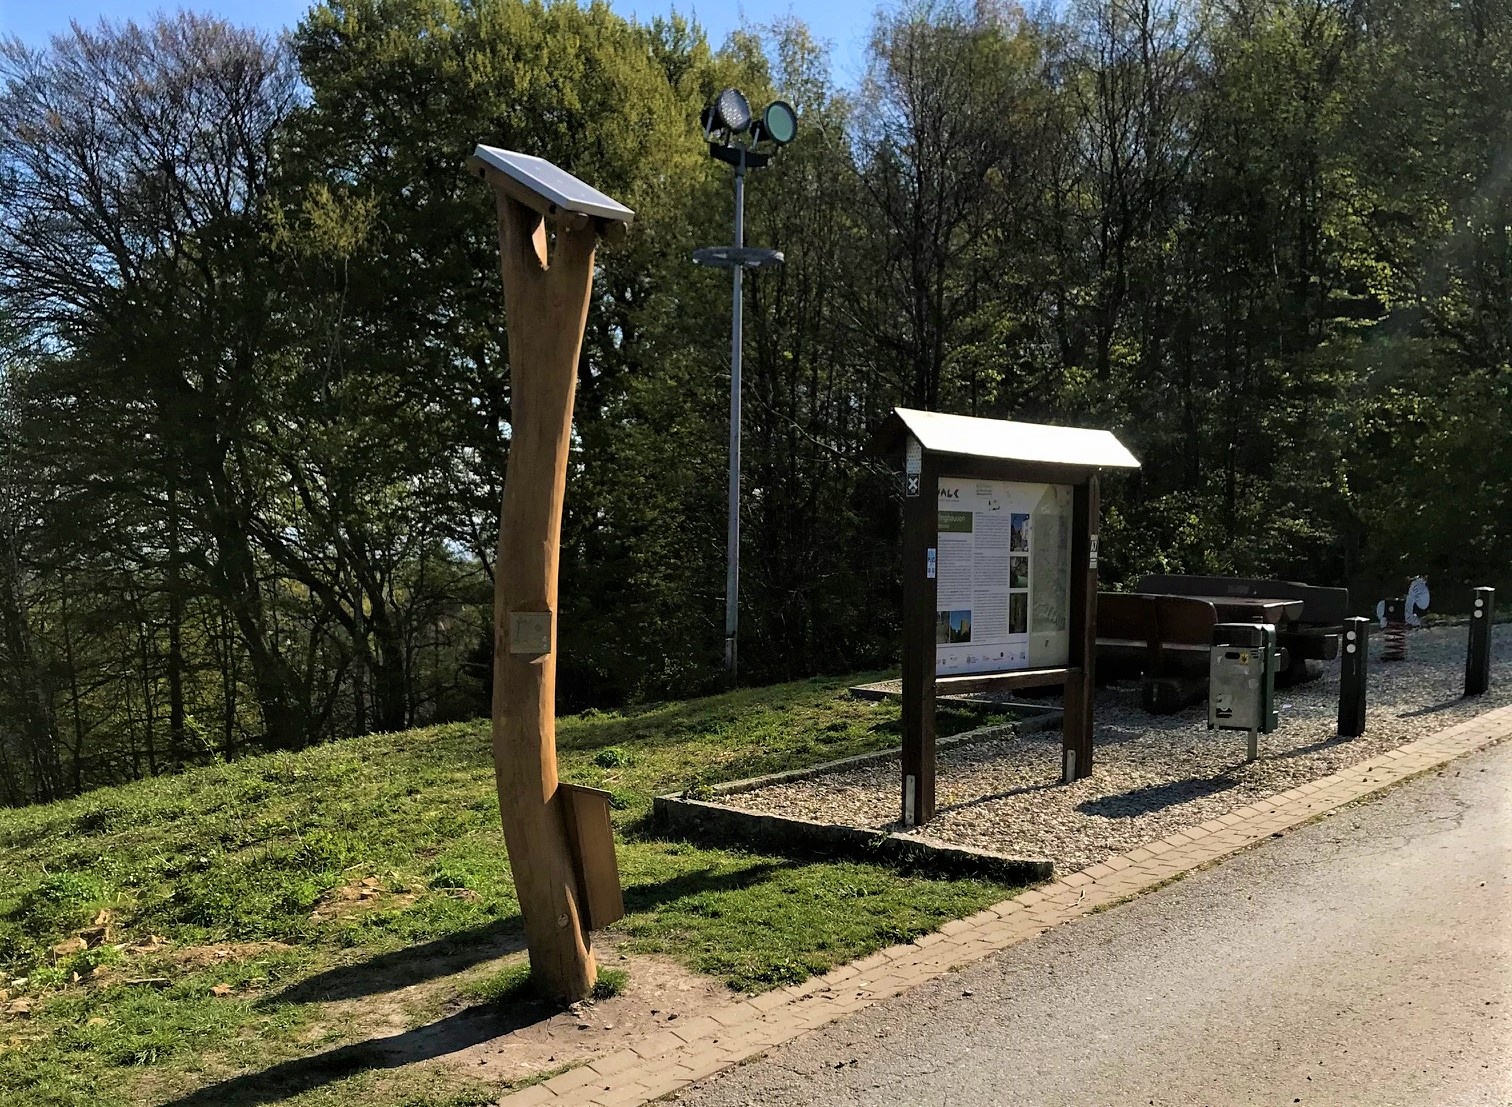 Hörstation in Oerlinghausen an der Himmelsleiter